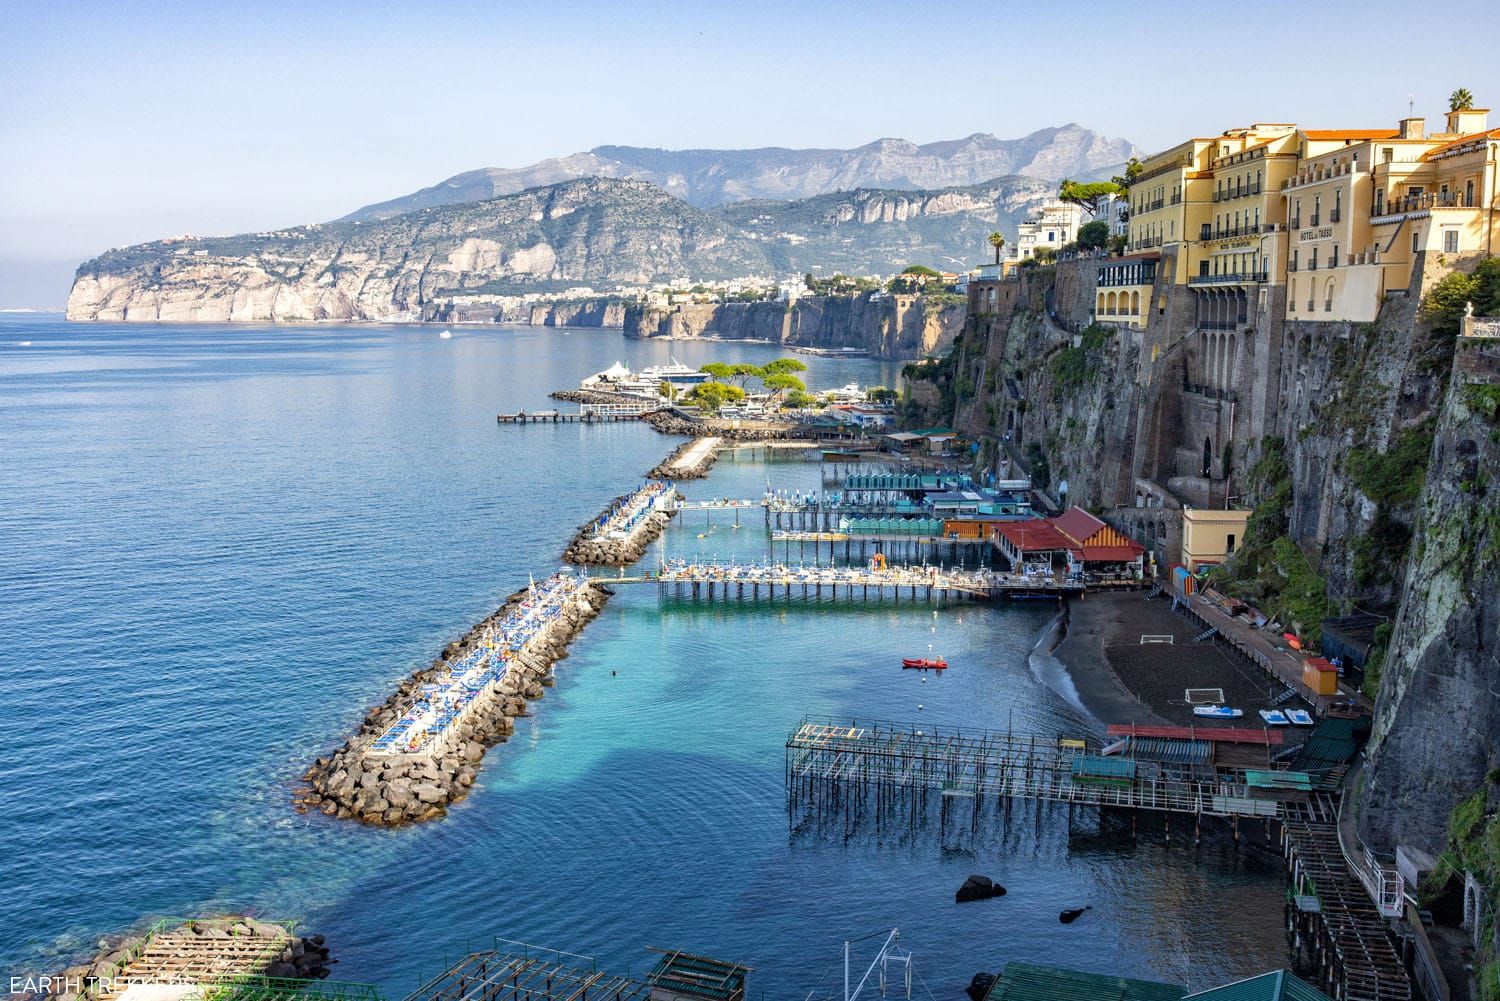 Sorrento Italy | 10 days in Italy Itinerary